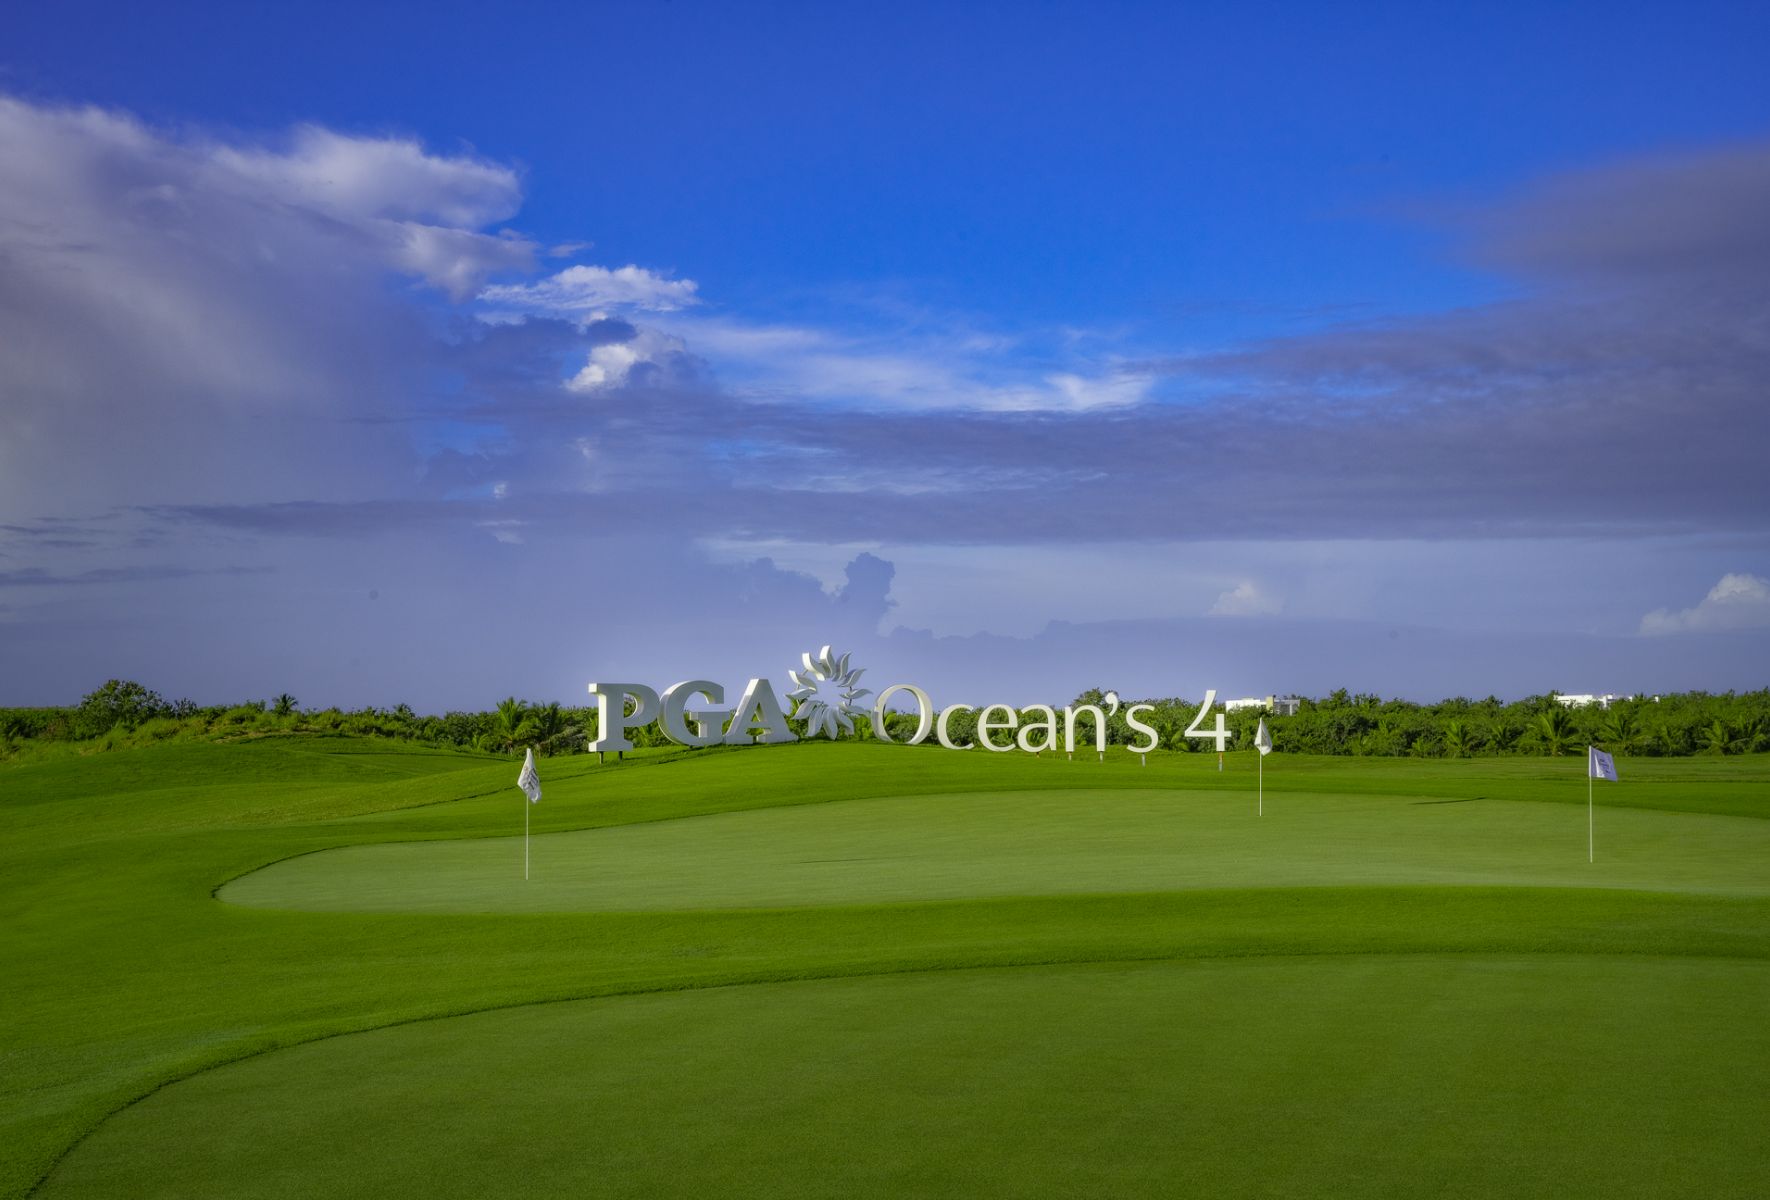 pga-oceans-4-golf-experiencies-la-romana-32